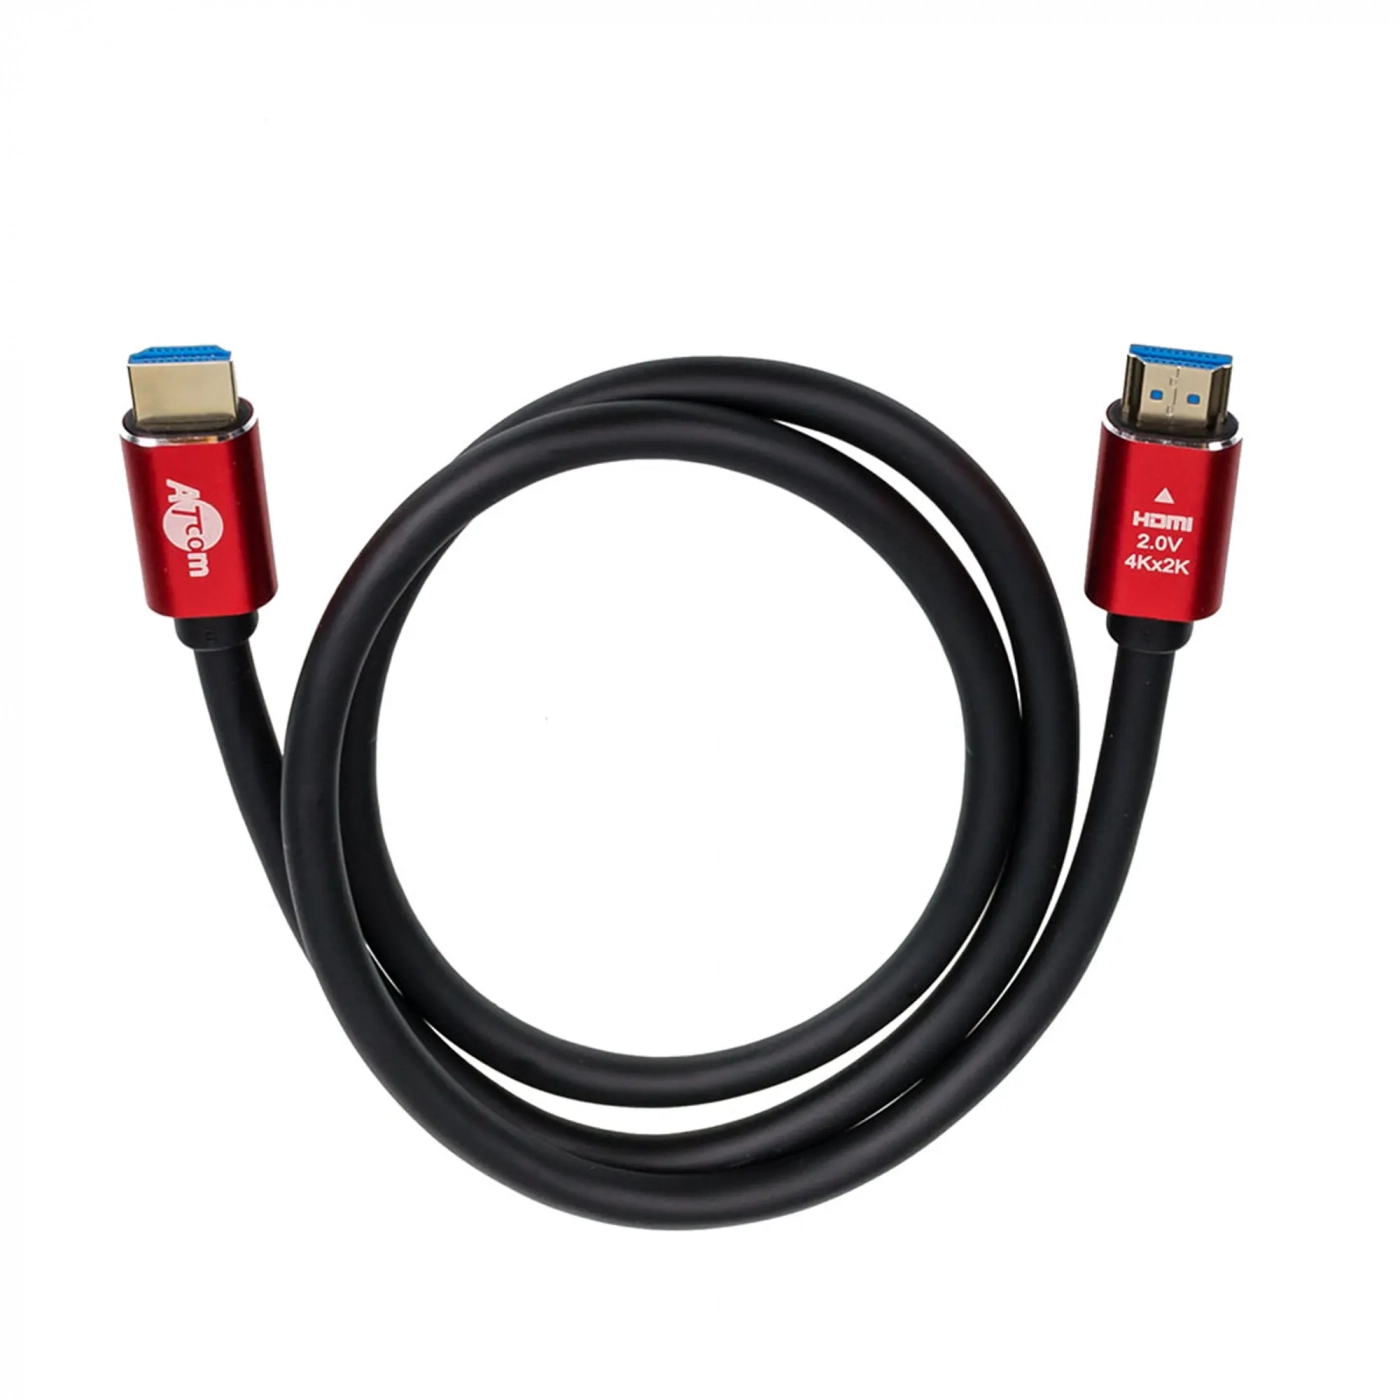 Купить Кабель ATcom HDMI-HDMI Red/Gold, пакет, 3м, 4К, VER 2.0 - фото 2